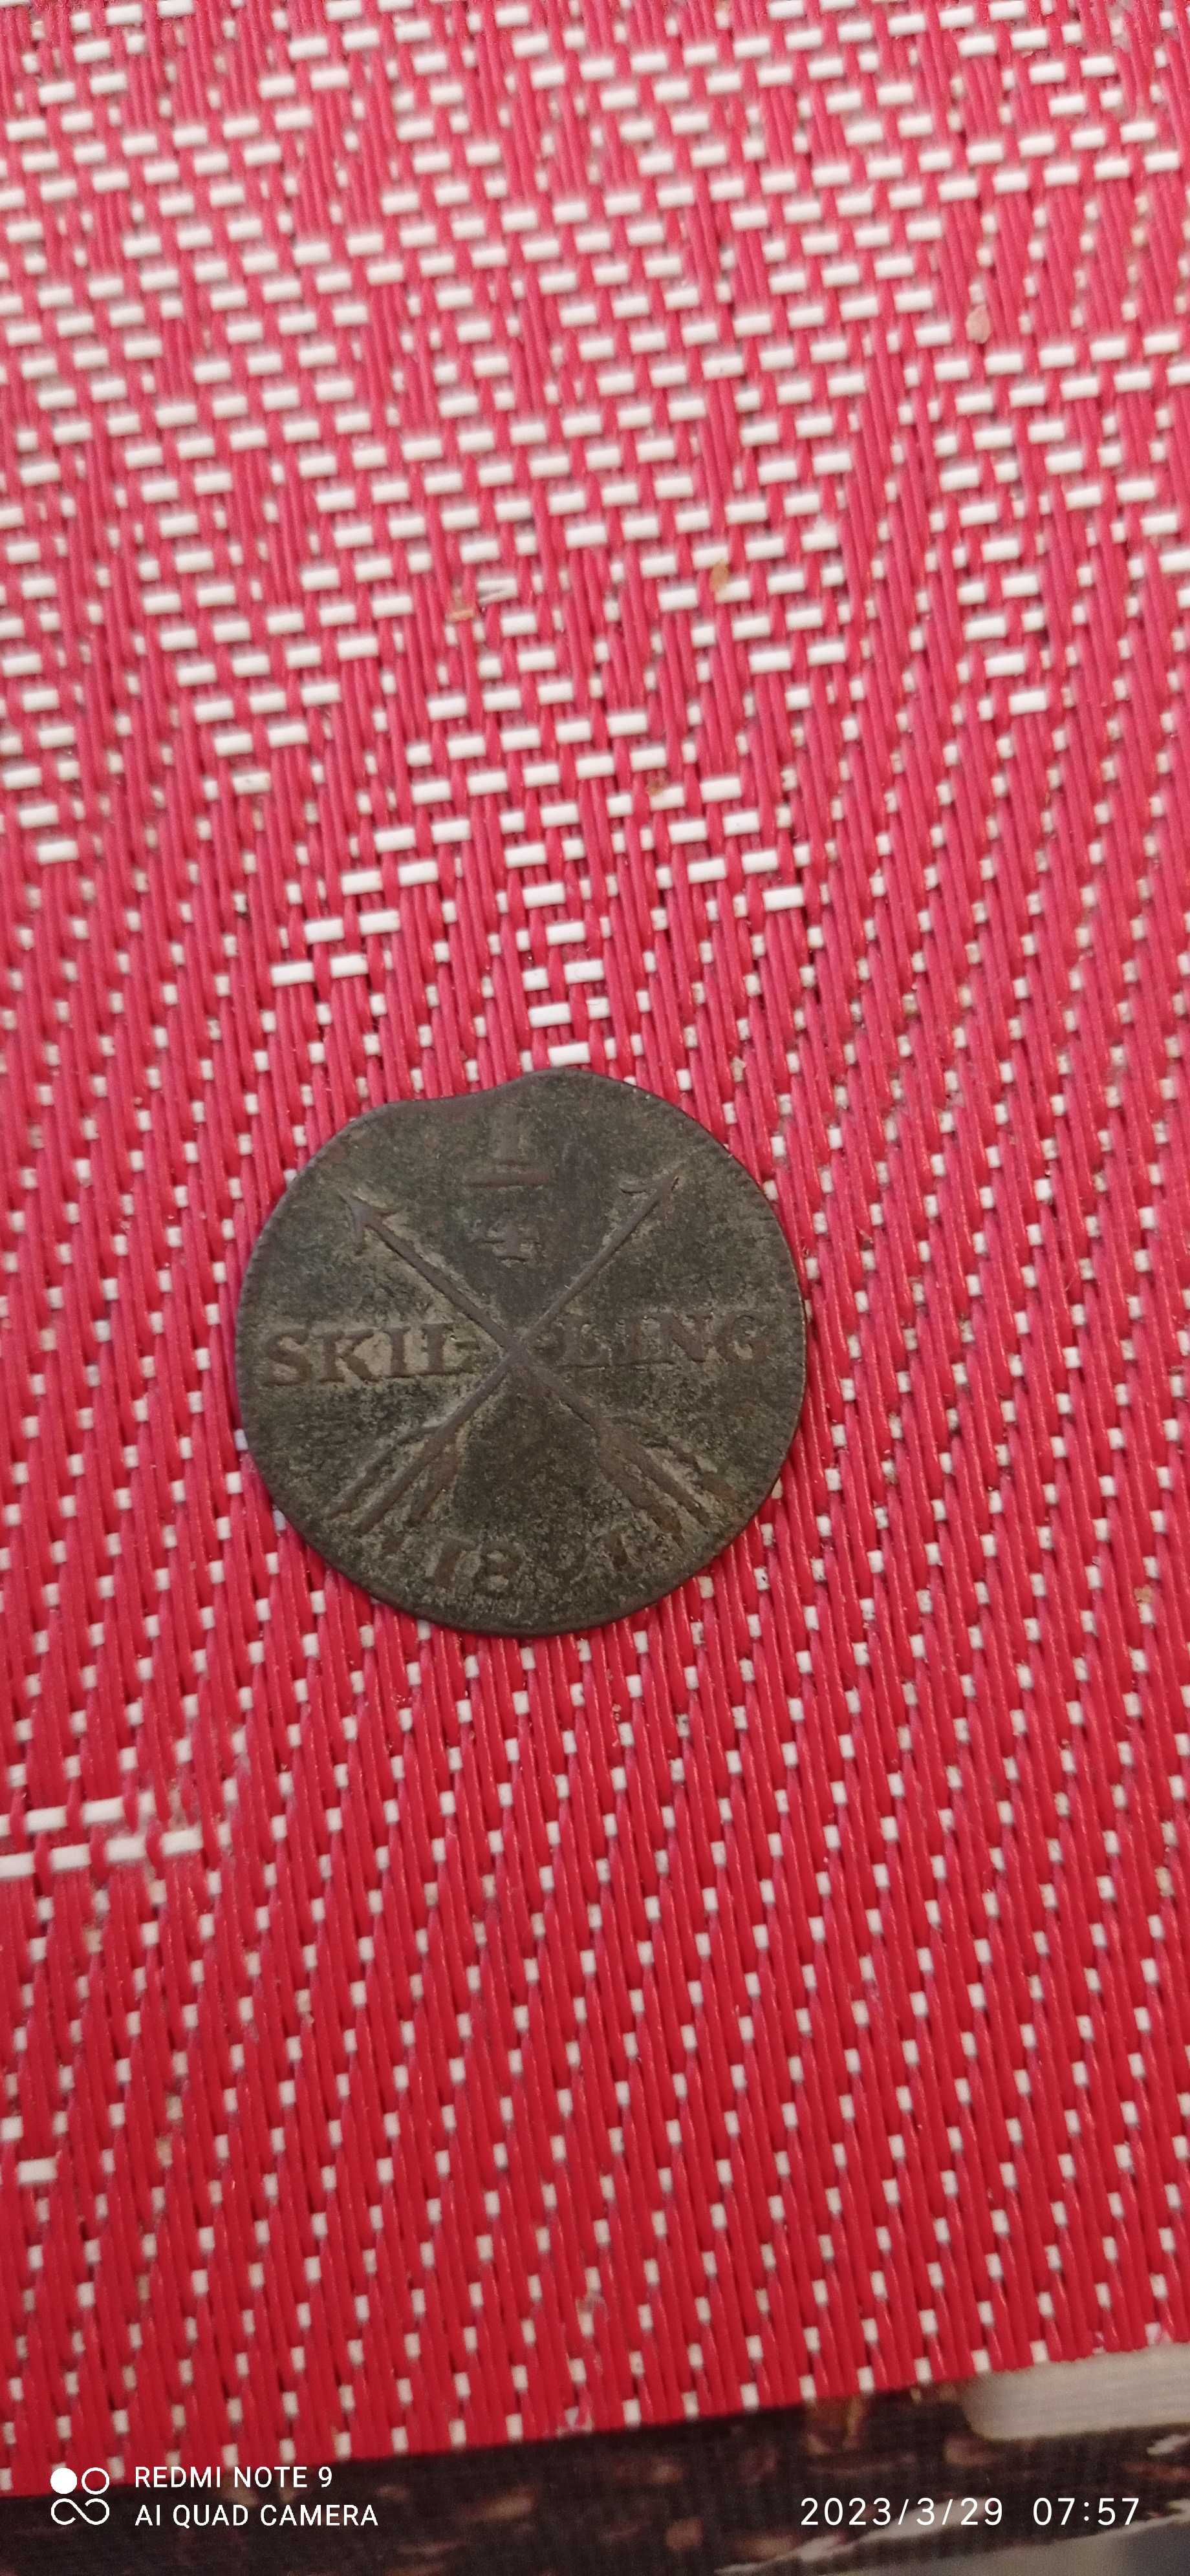 Stare monety szwedzkie